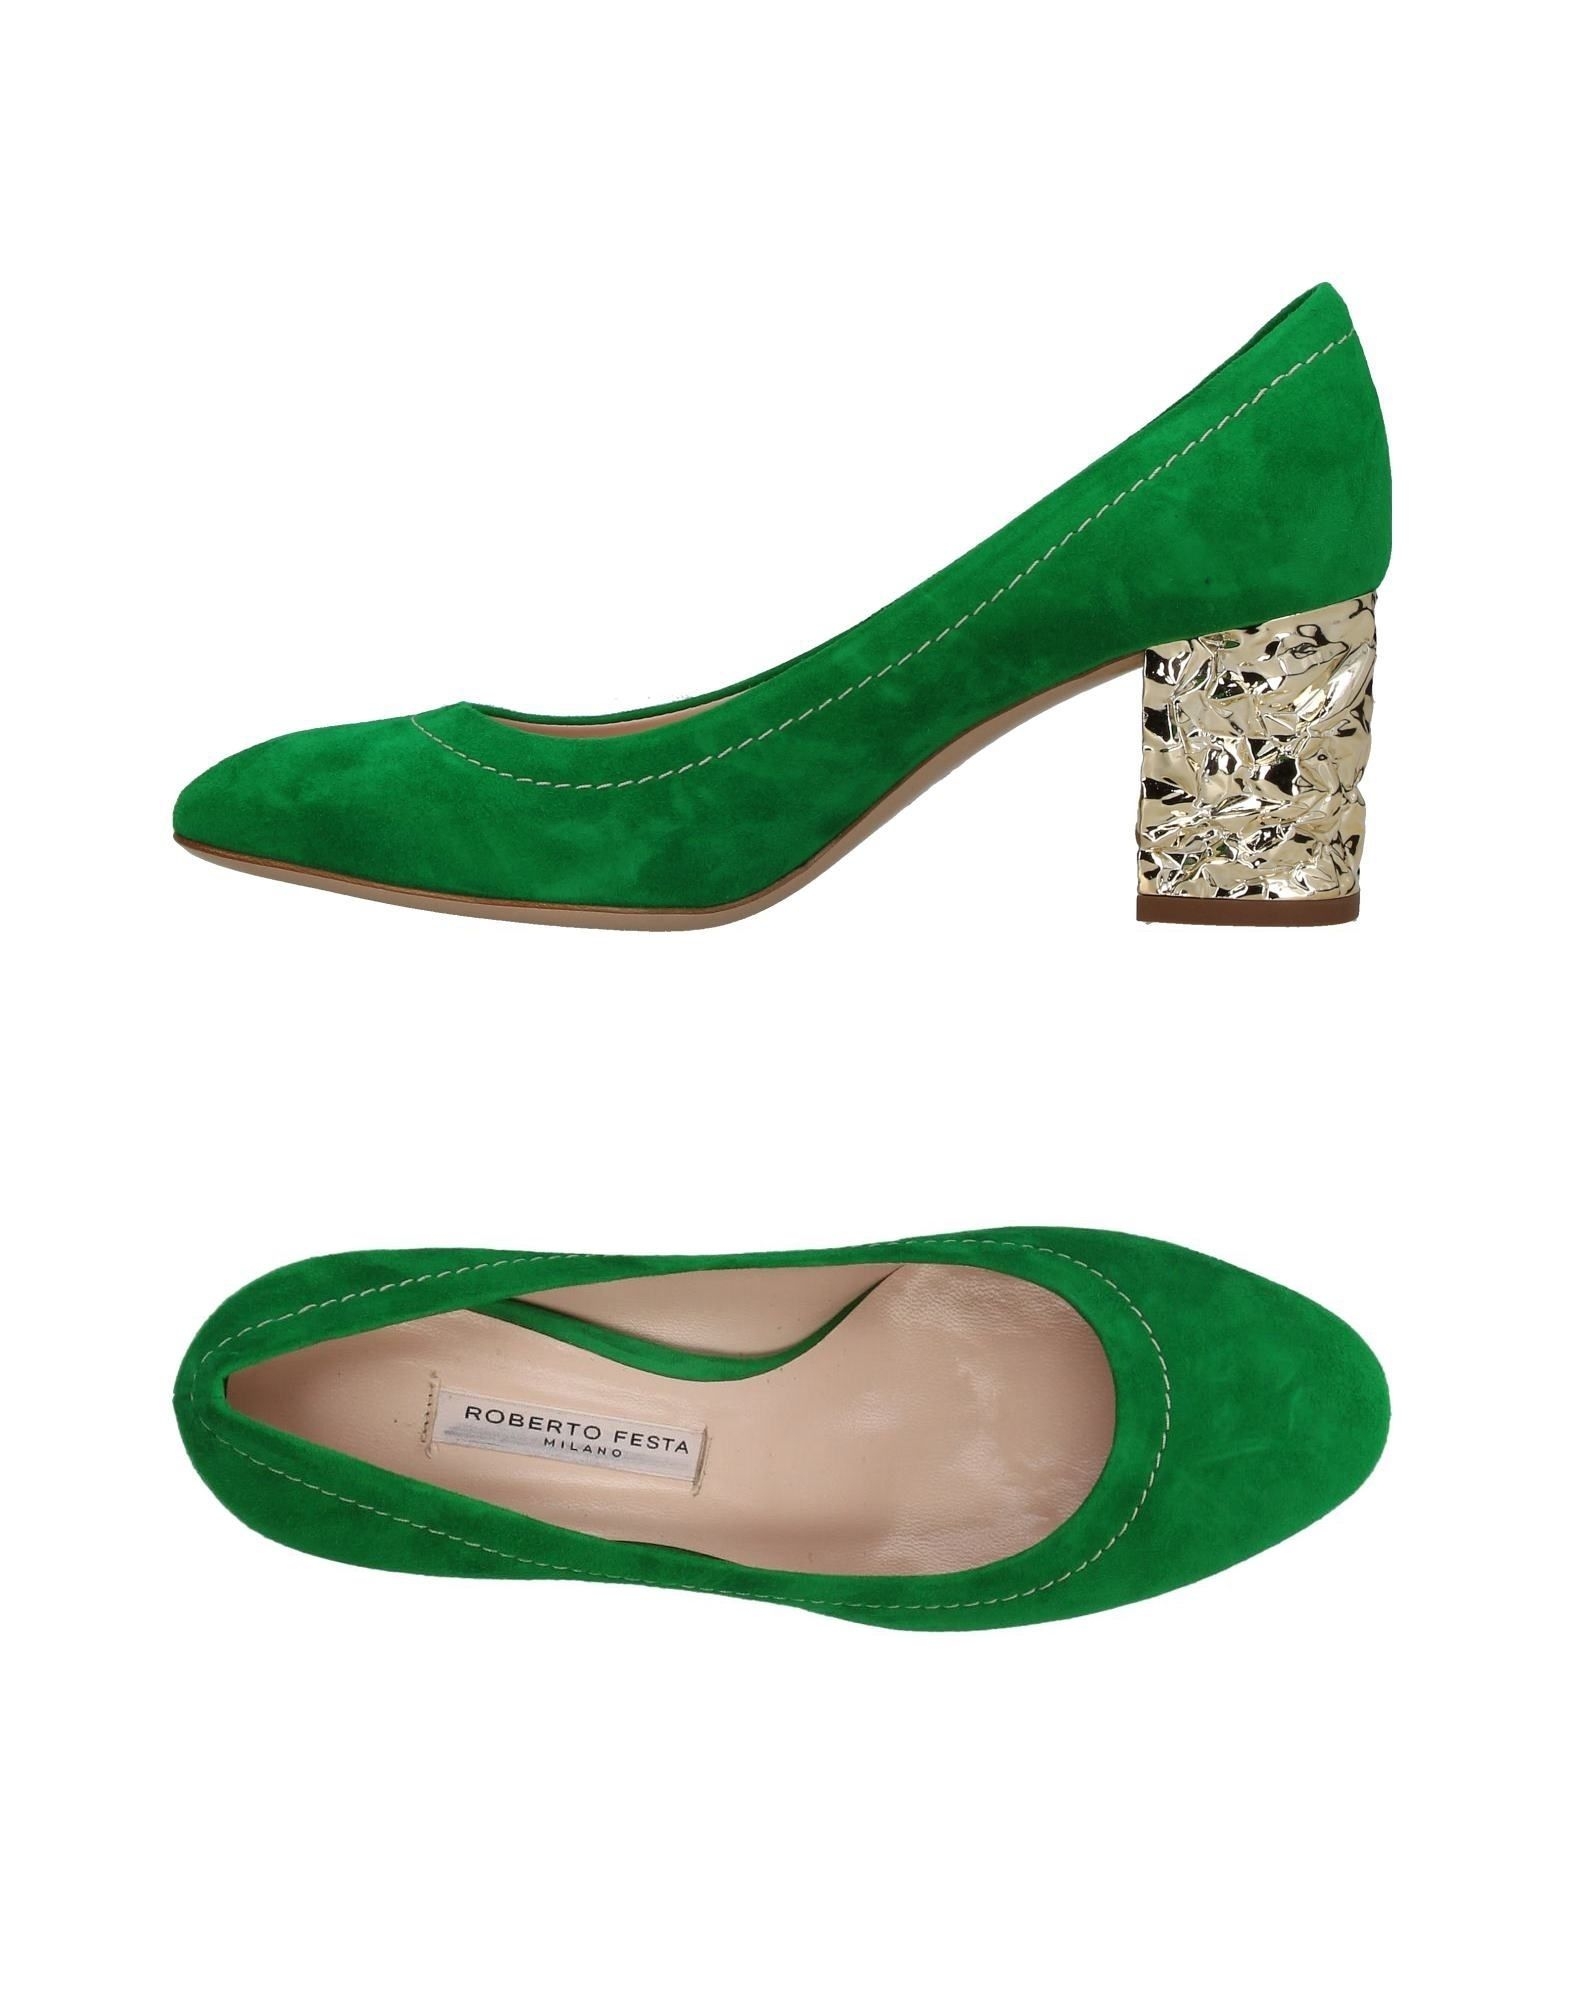 Зеленые замшевые женские. Roberto festa обувь. Туфли Tuffoni зеленые замшевые. Туфли комнатные женские, зеленые артикул: hl8253green. Женские зеленые туфли.